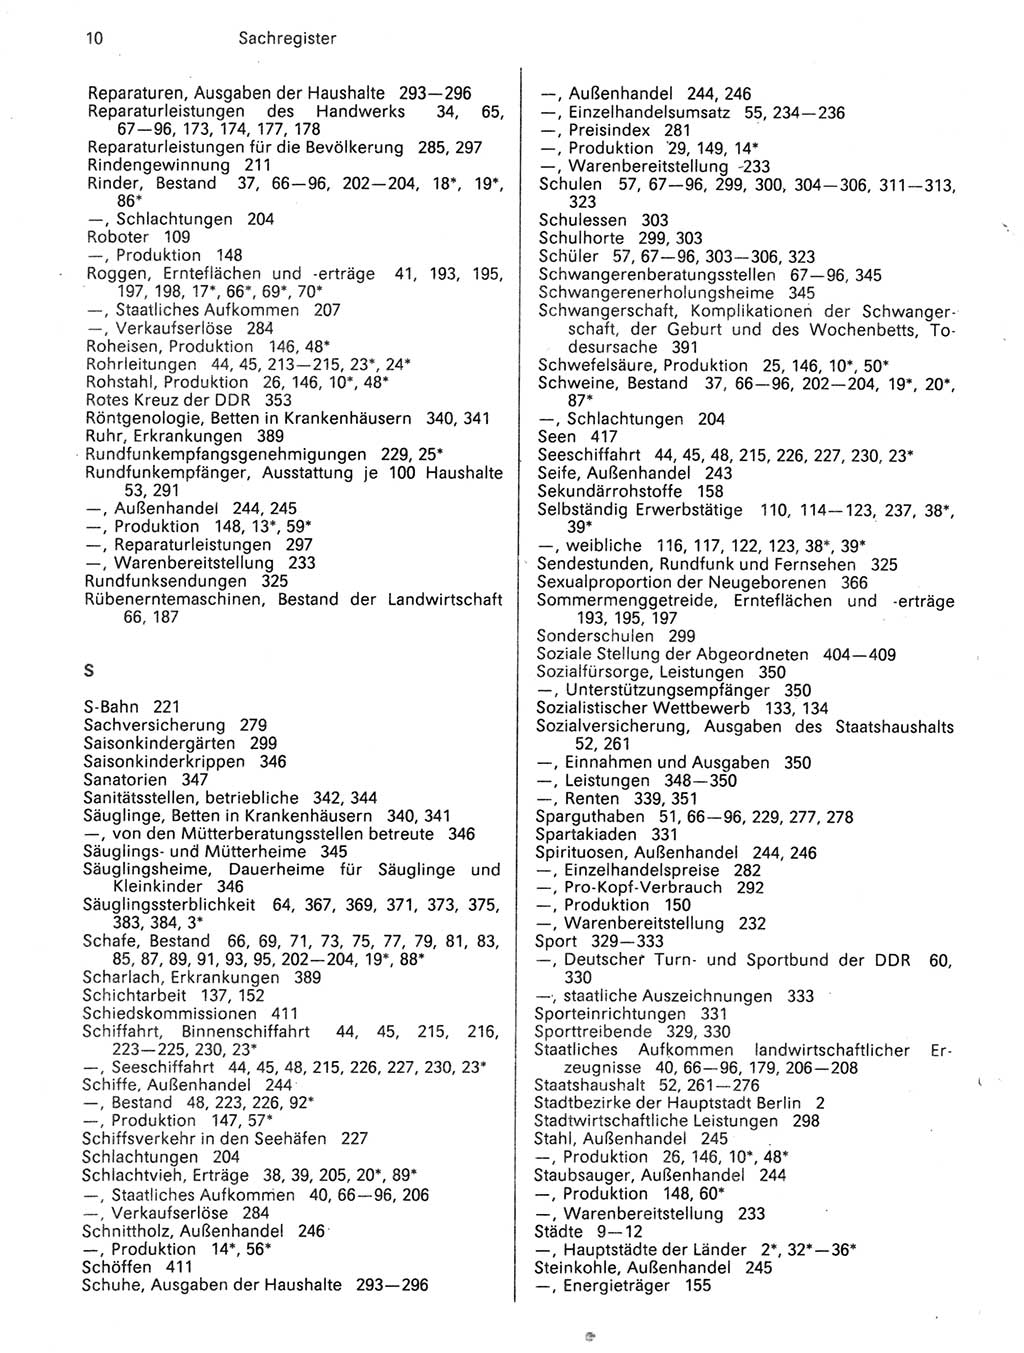 Statistisches Jahrbuch der Deutschen Demokratischen Republik (DDR) 1989, Seite 10 (Stat. Jb. DDR 1989, S. 10)